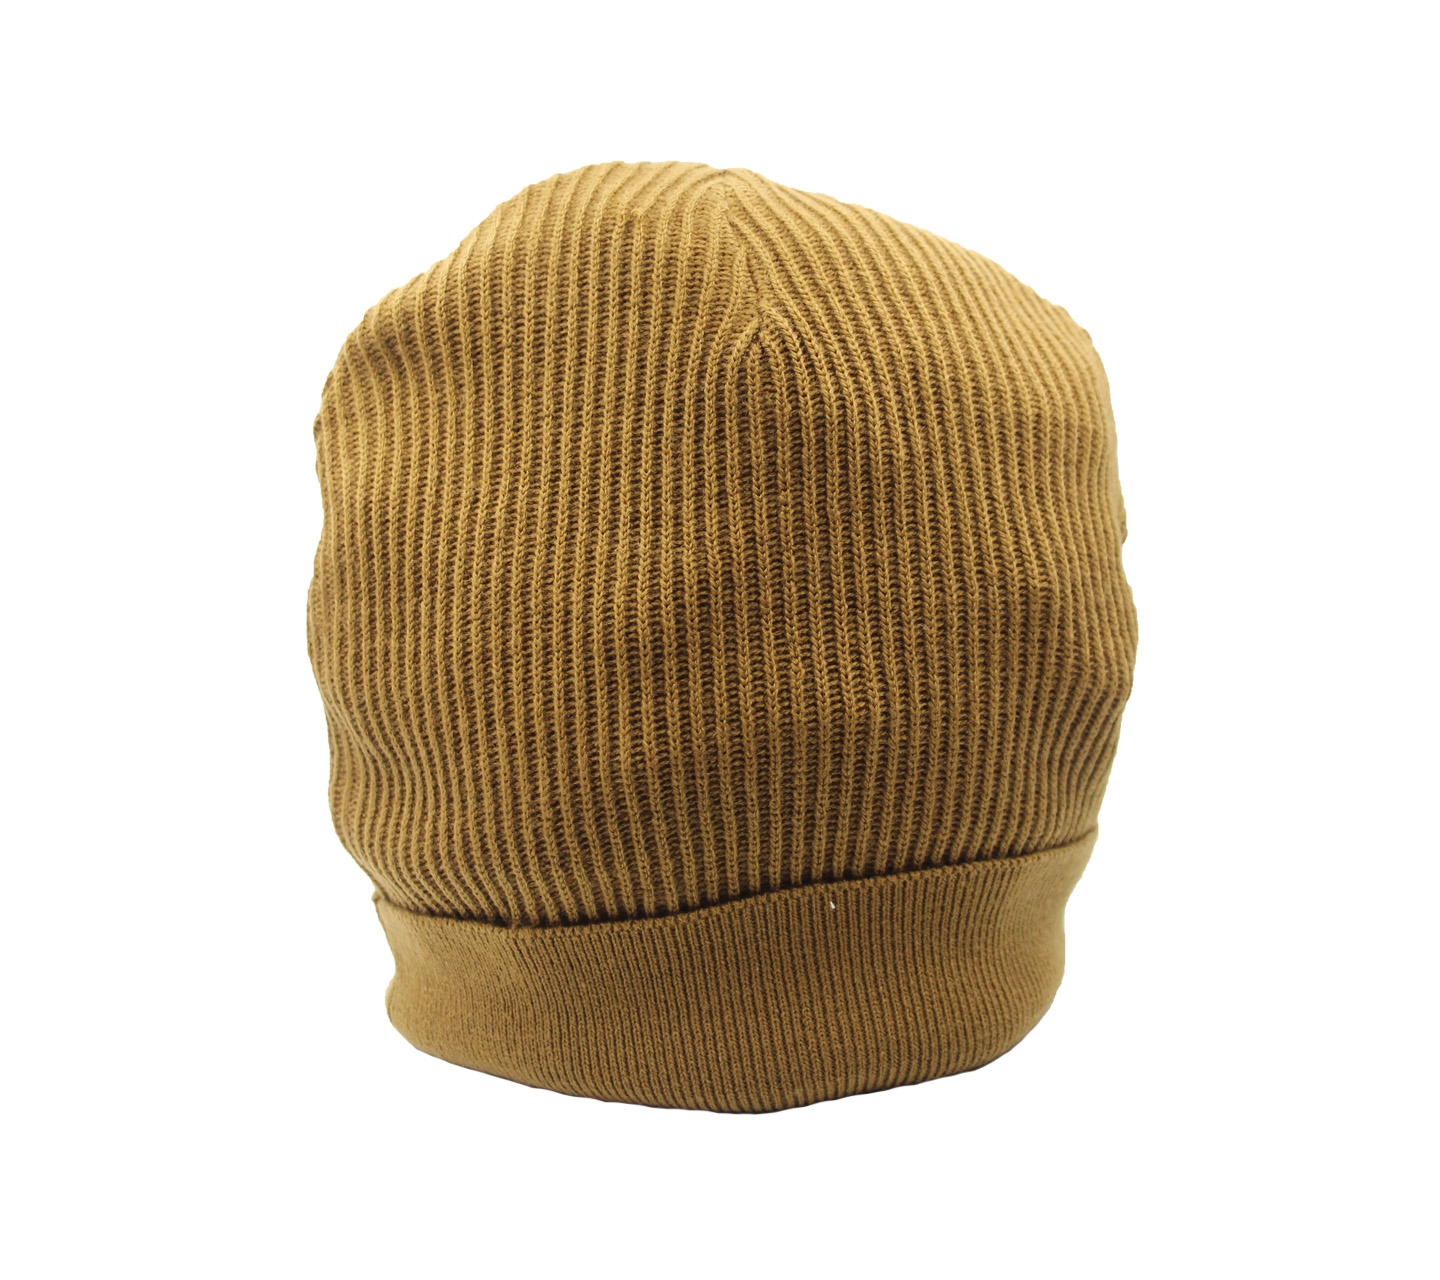 Duma Brown Knit Hats